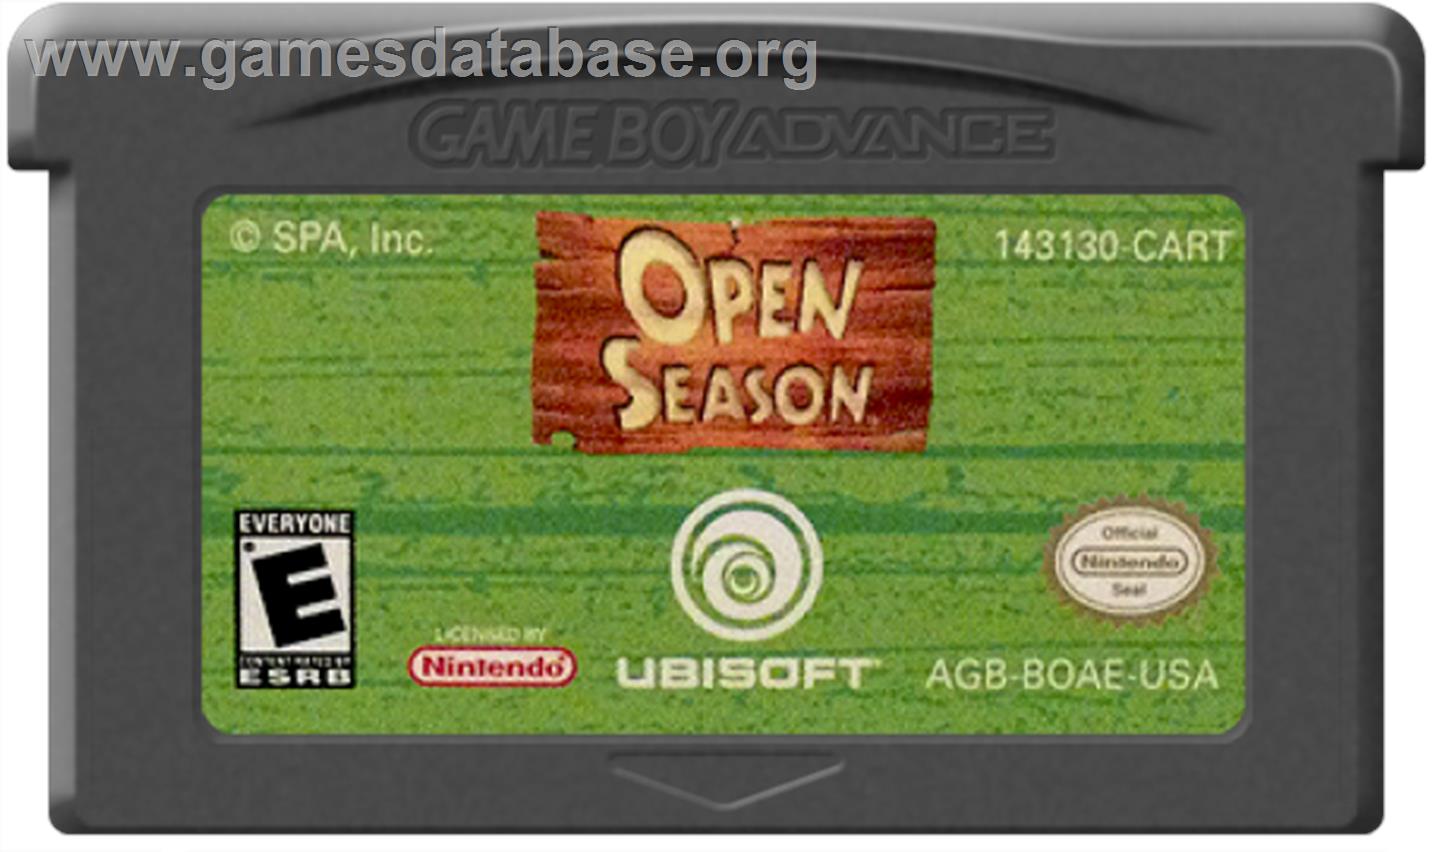 Open Season - Nintendo Game Boy Advance - Artwork - Cartridge